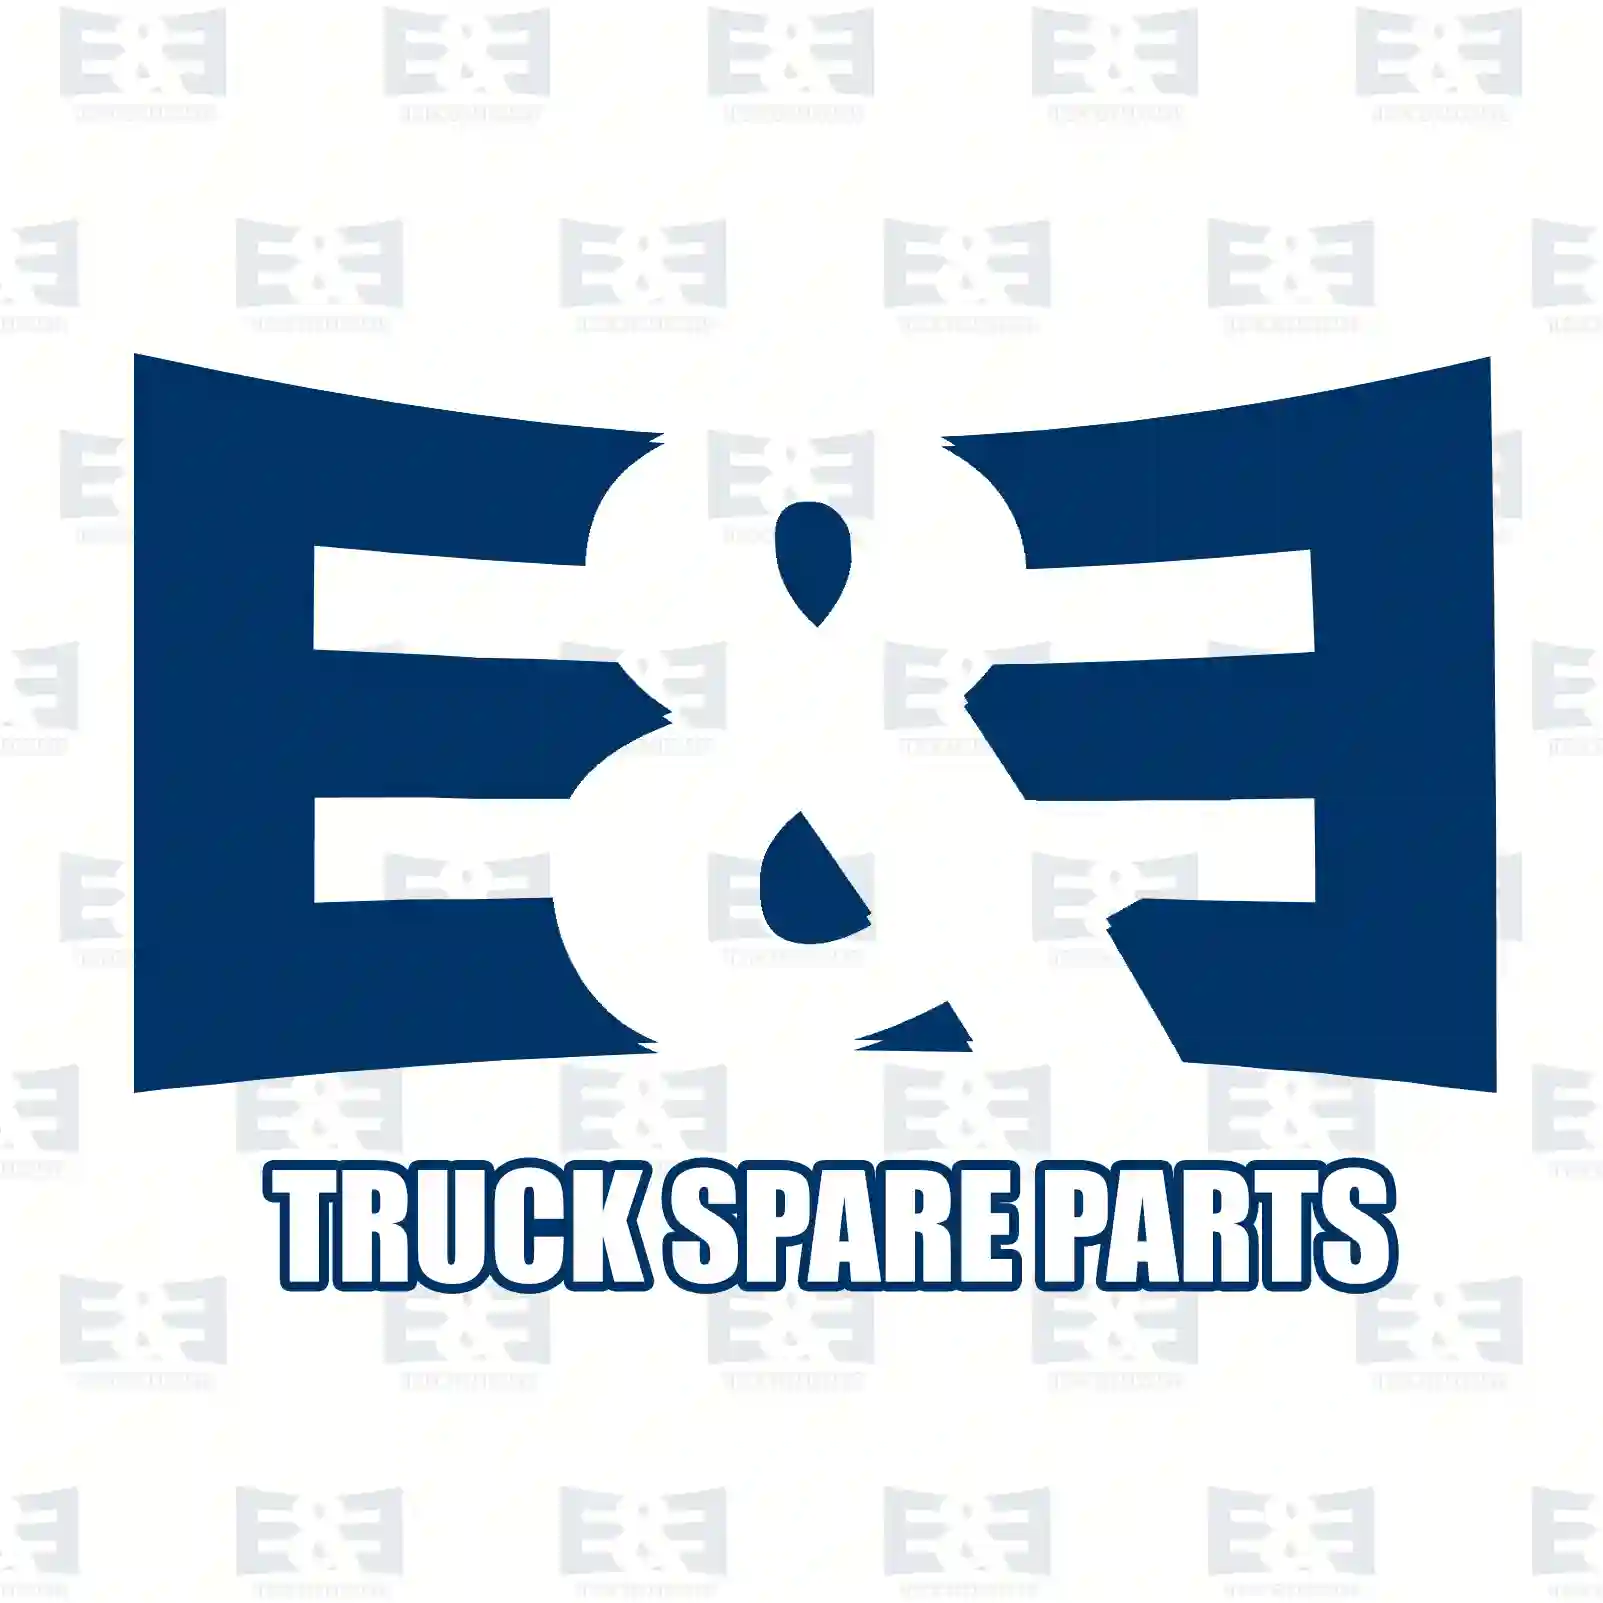 Camshaft, 2E2206219, 1439778, 1509916 ||  2E2206219 E&E Truck Spare Parts | Truck Spare Parts, Auotomotive Spare Parts Camshaft, 2E2206219, 1439778, 1509916 ||  2E2206219 E&E Truck Spare Parts | Truck Spare Parts, Auotomotive Spare Parts